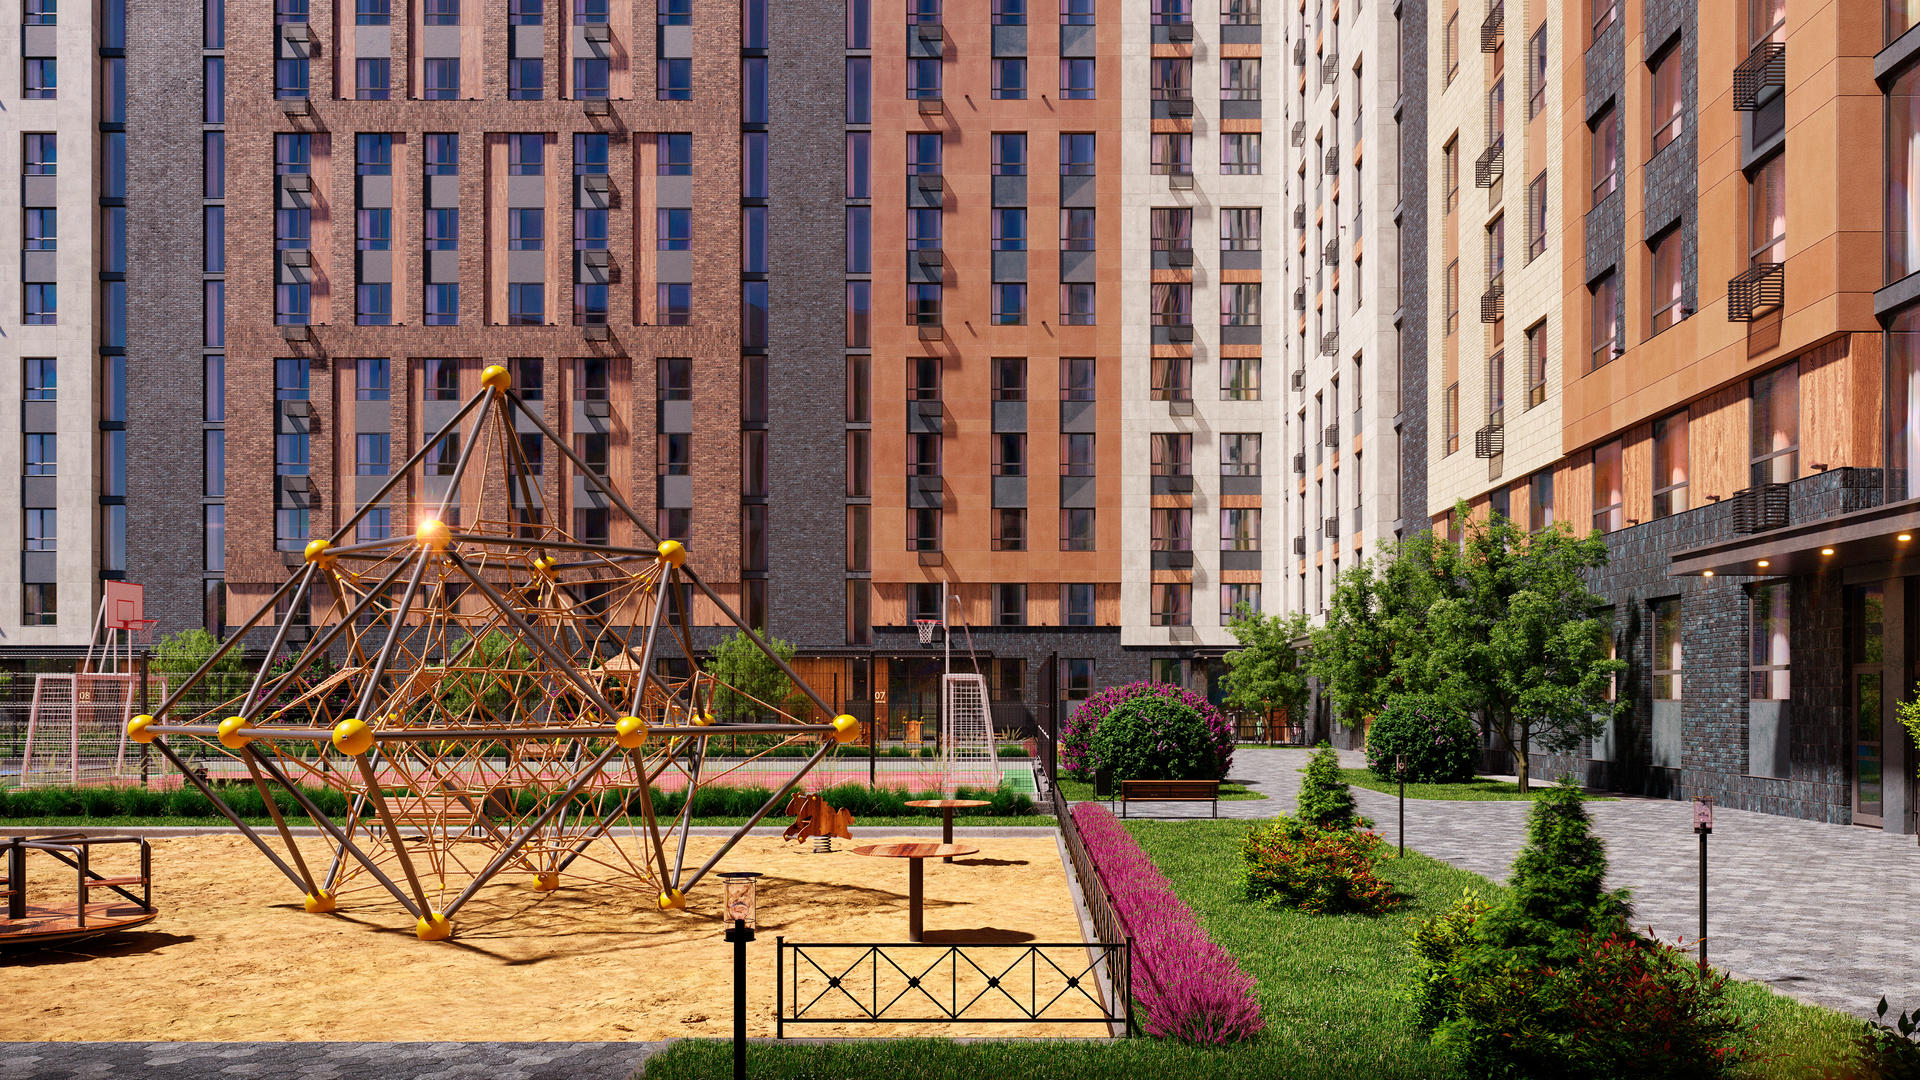 Продам квартиру в Москве по адресу жилой комплекс Эко Бунино, 142, площадь 6395 квм Недвижимость Москва (Россия)  Внутри района есть облагороженная ландшафтная зона для прогулок и пикников, а также оборудованная набережная